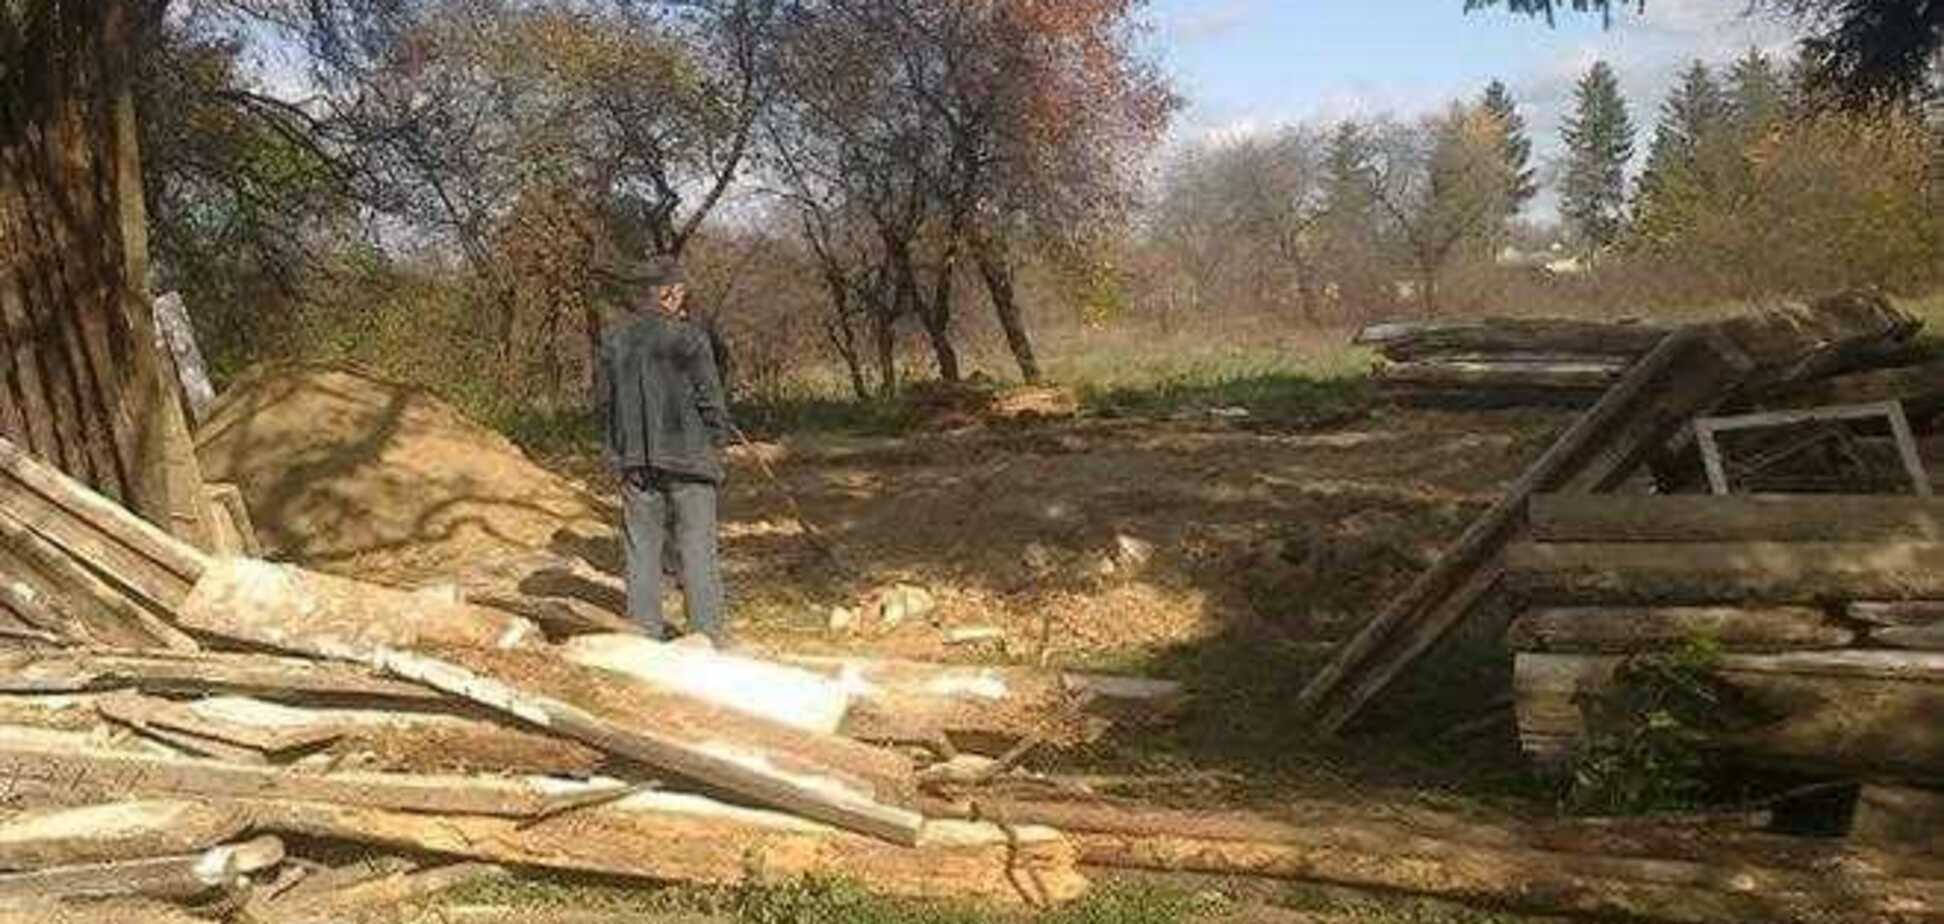 Янукович поручил разобраться с демонтажем 'дома чумака' в селе Шевченко